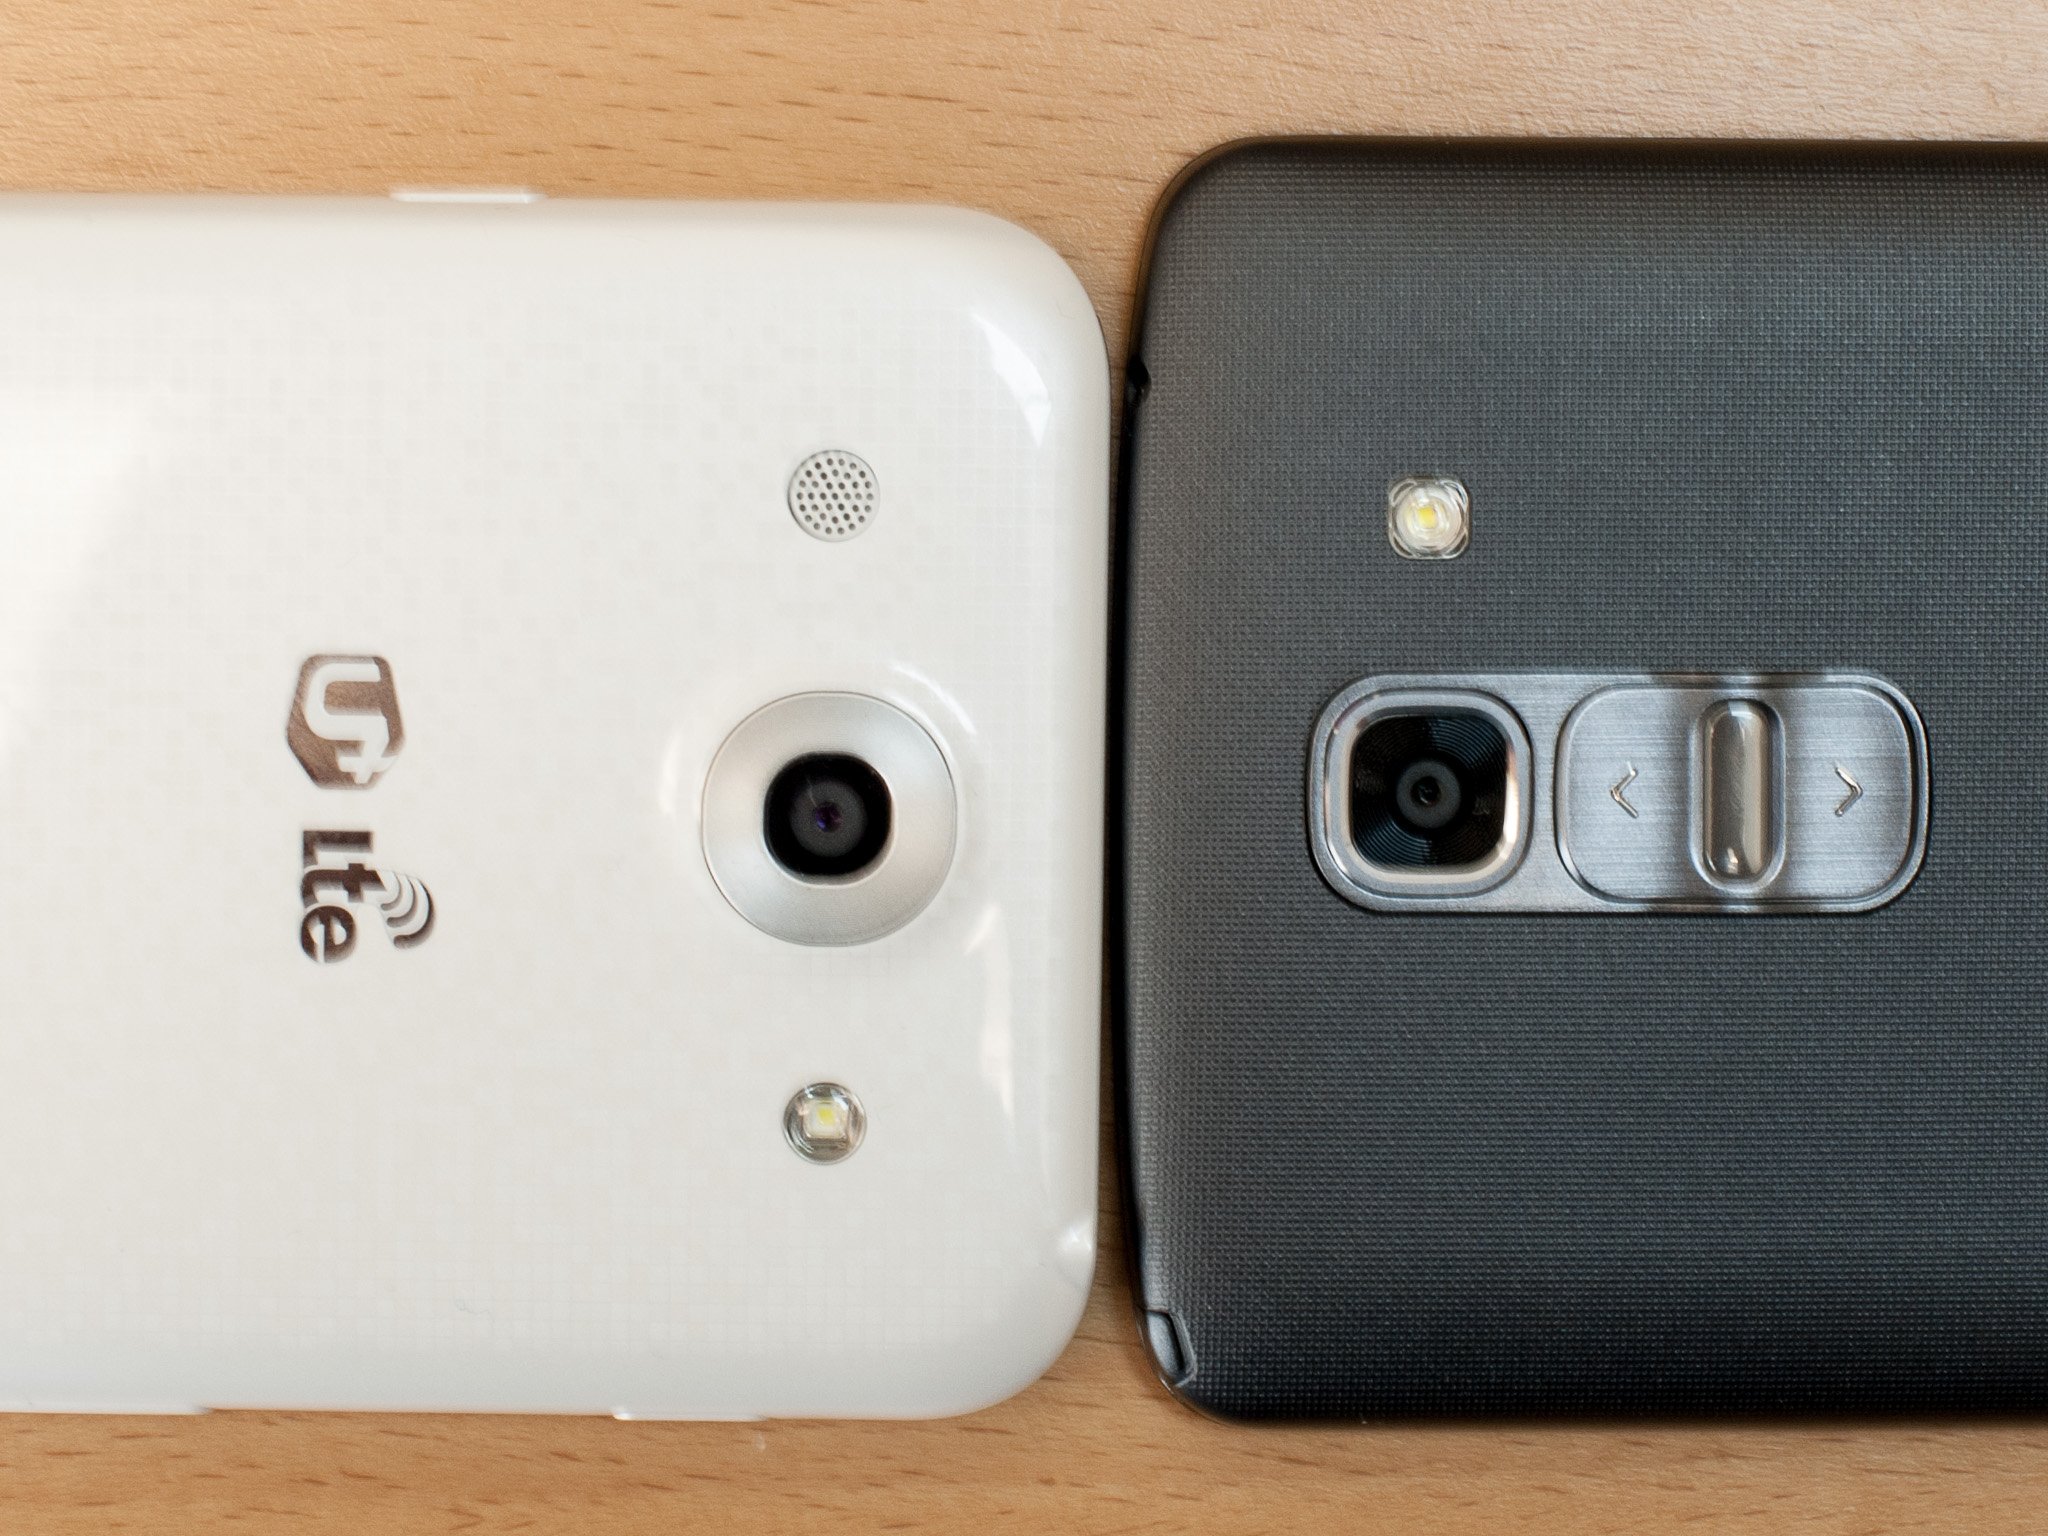 LG G Pro and G Pro 2